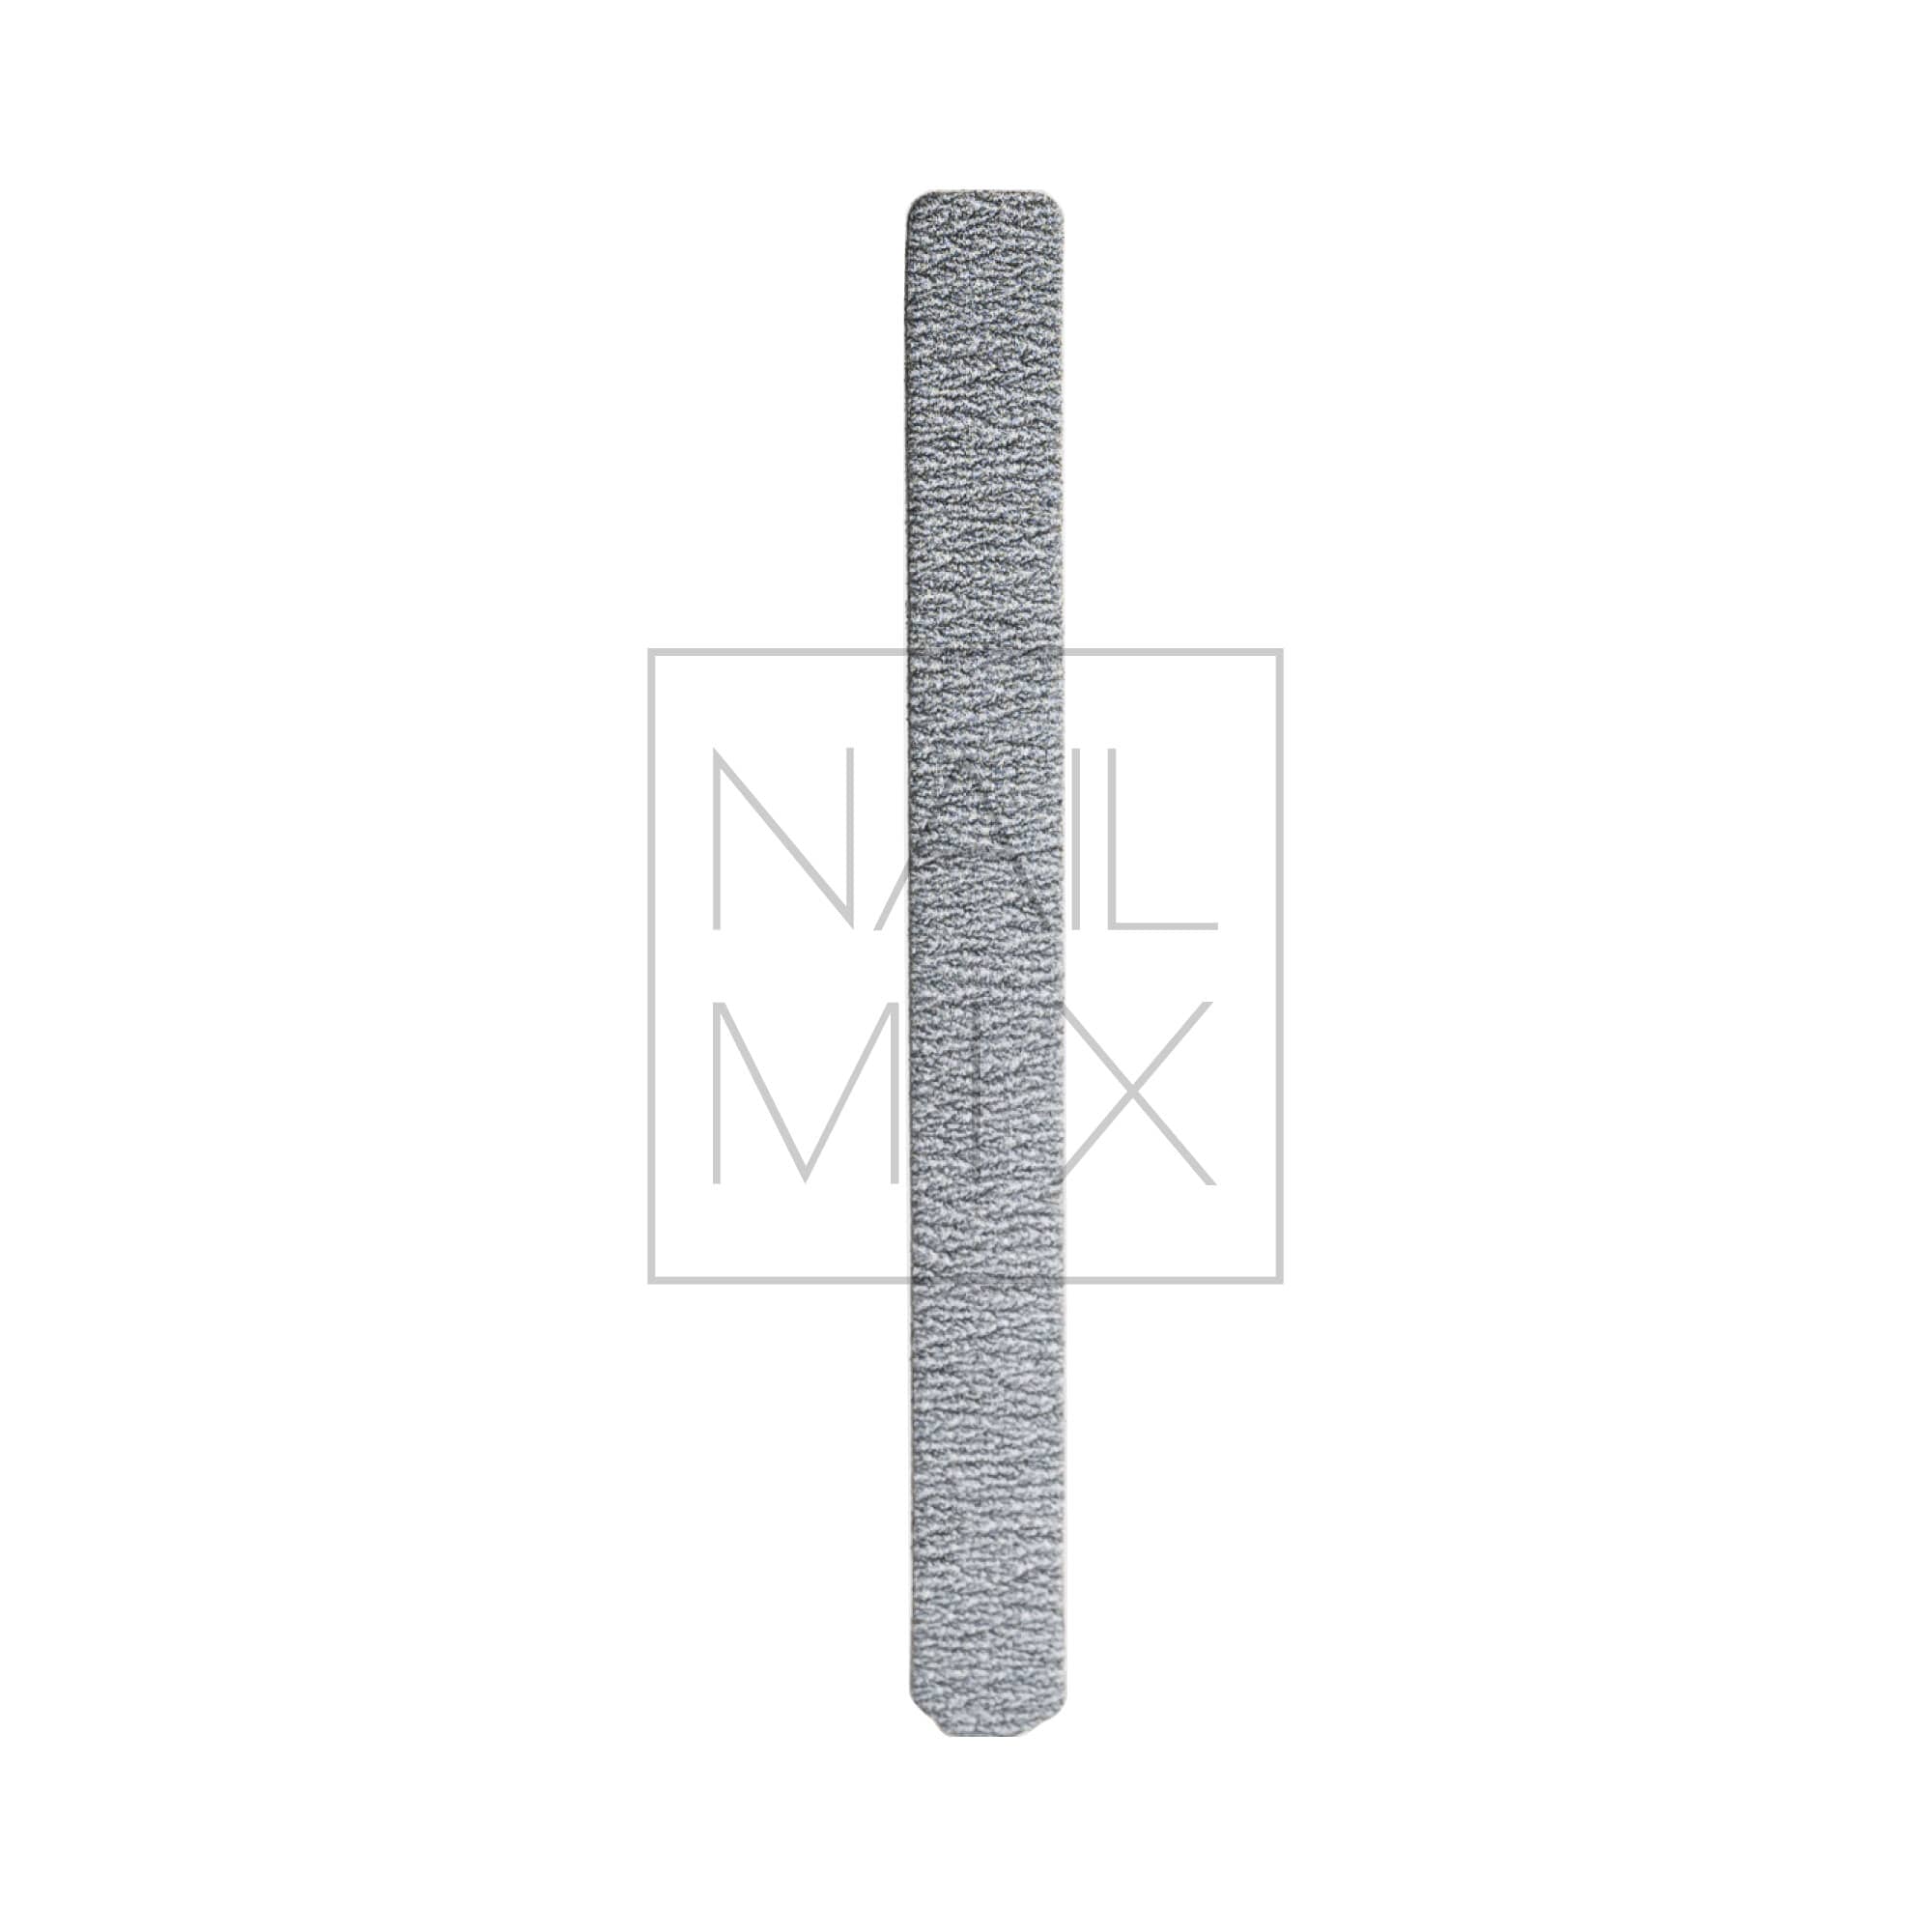 Kerman Náhradní brusný papír S - zebra (14x135mm), 50 kusů